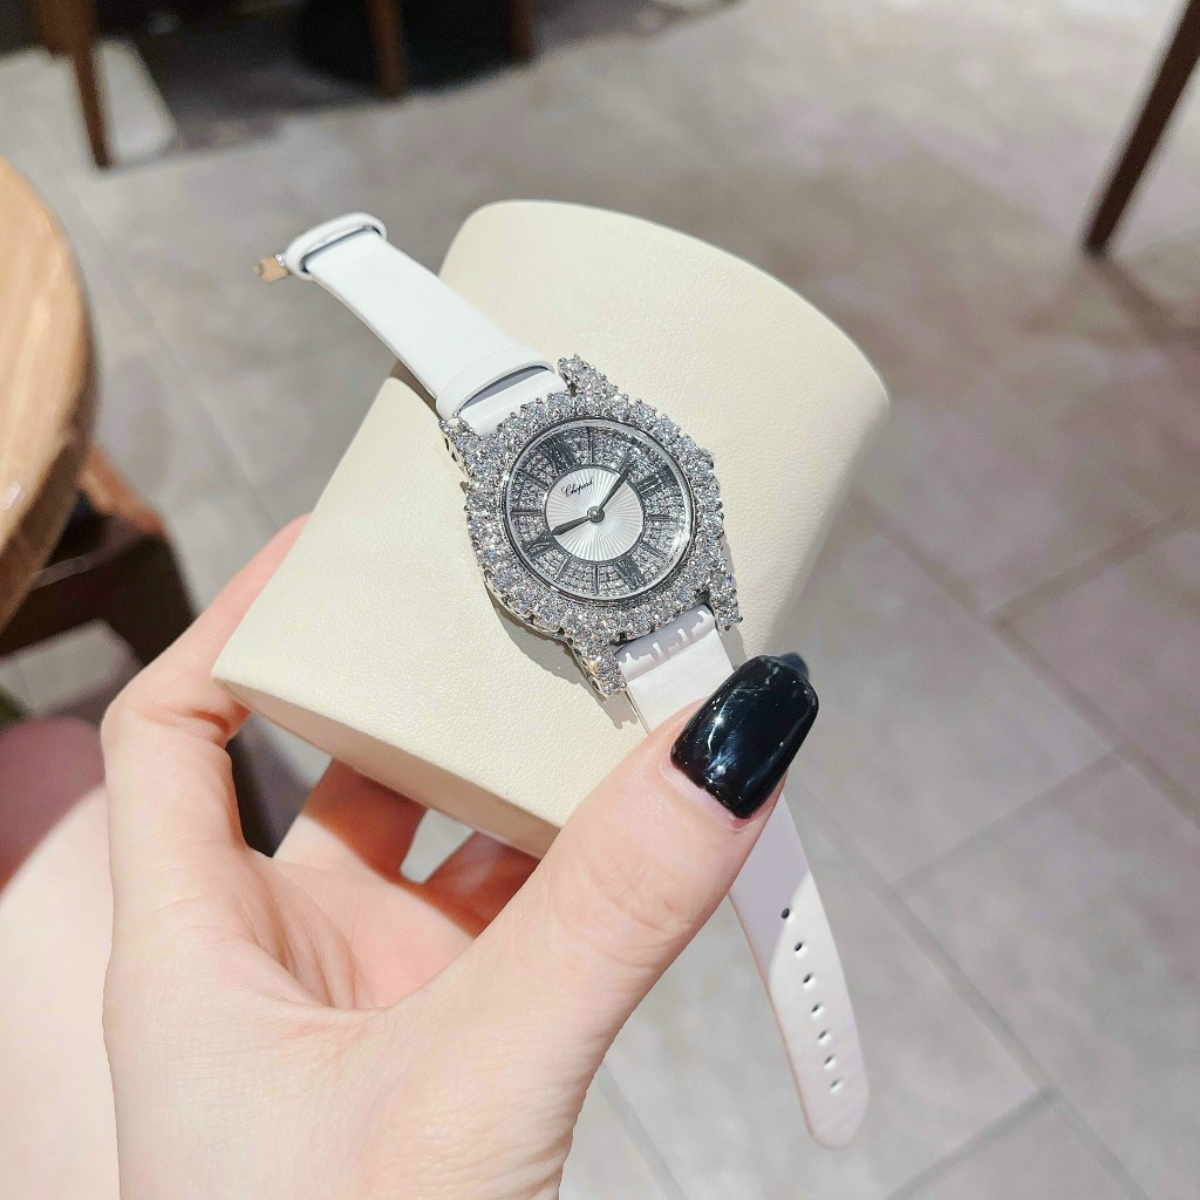 Đồng hồ nữ dây cao su Chopard đồng hồ nữ đẹp đính đá dây cao su bền bỉ chống nước sang trọng nữ tính cực hot đồng hồ mặt đá sang chảnh Phương Phát Luxury